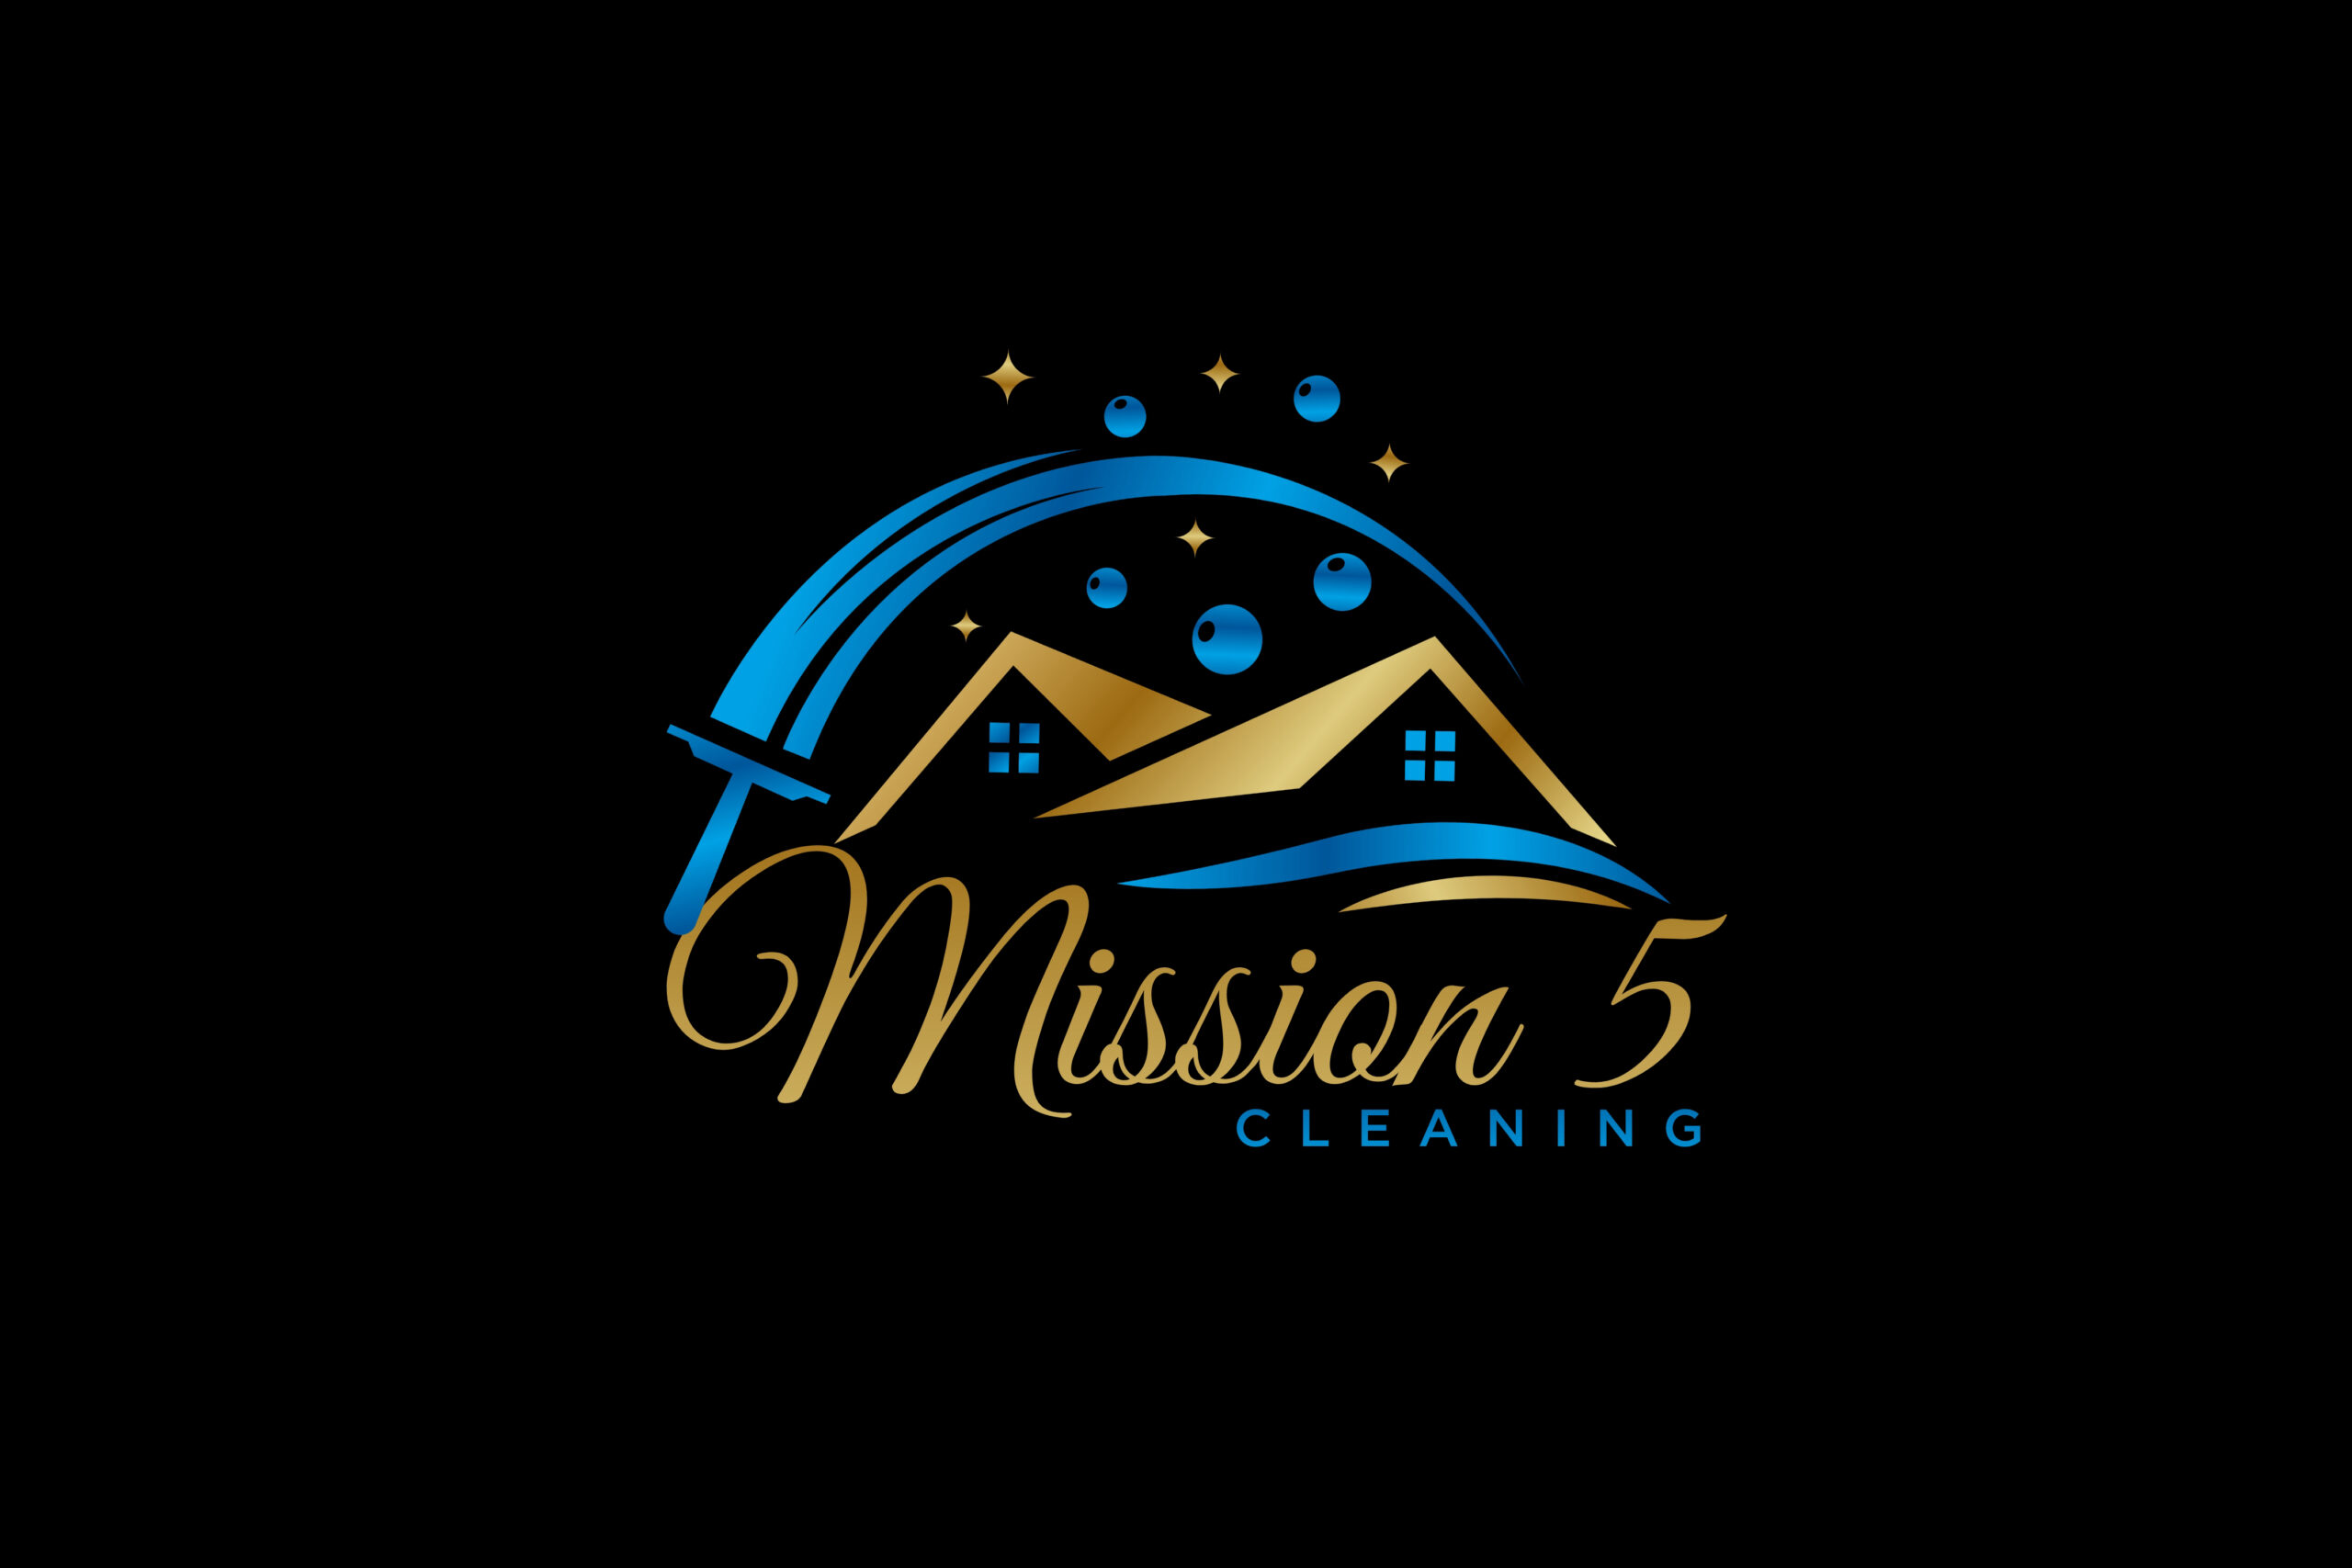 mission-5